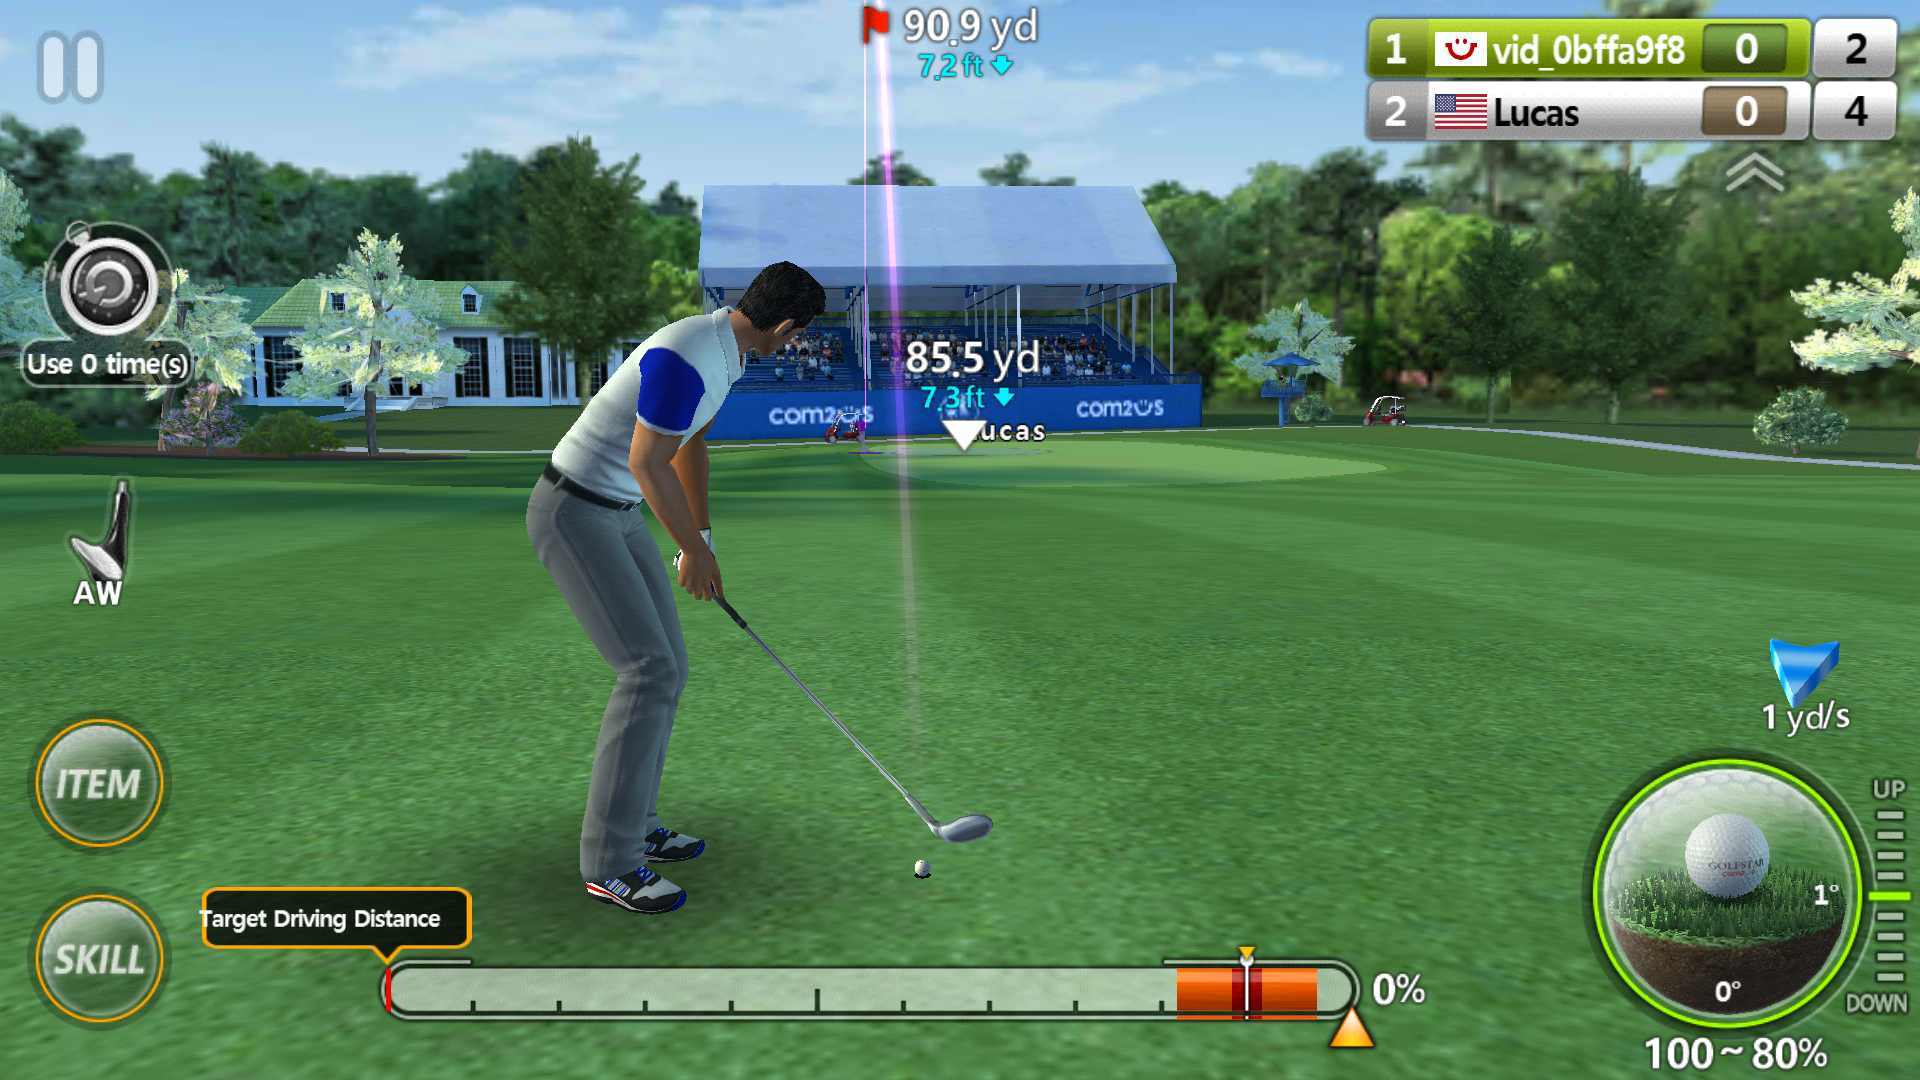 تحميل لعبة جولف كاملة رابط مباشر للأندرويد King of the Course Golf